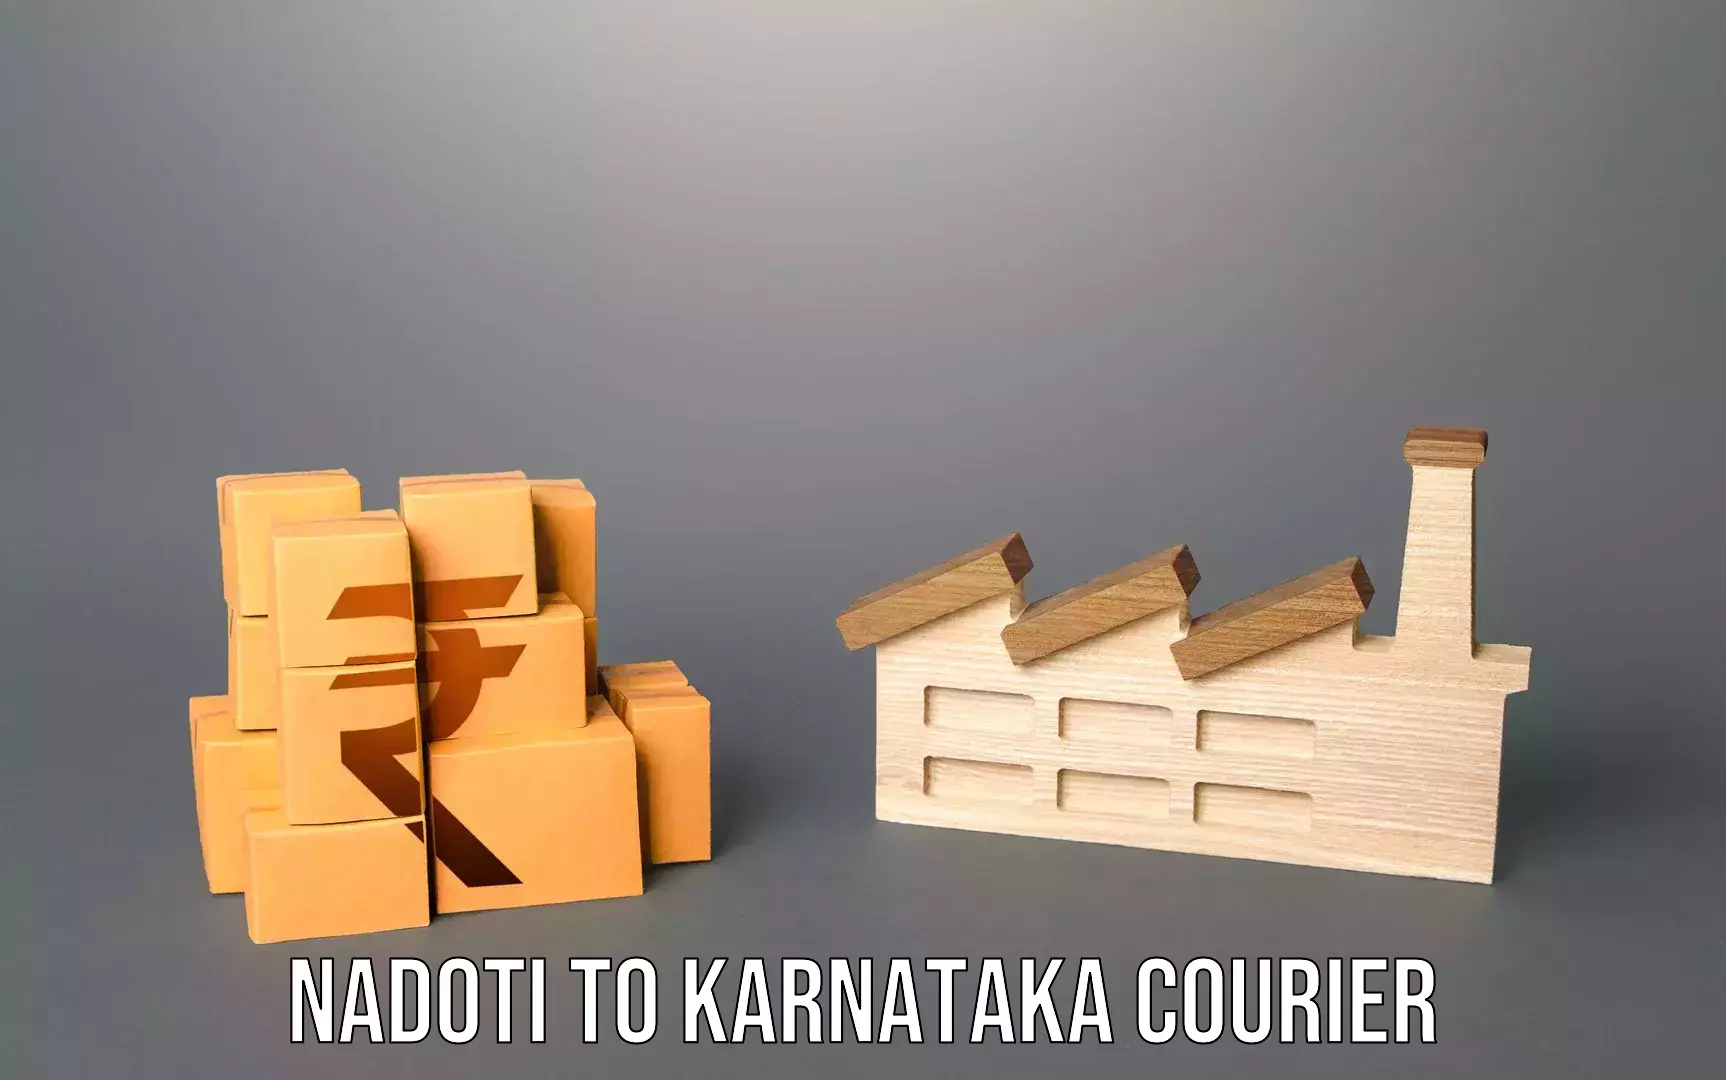 Luggage transit service Nadoti to Karnataka